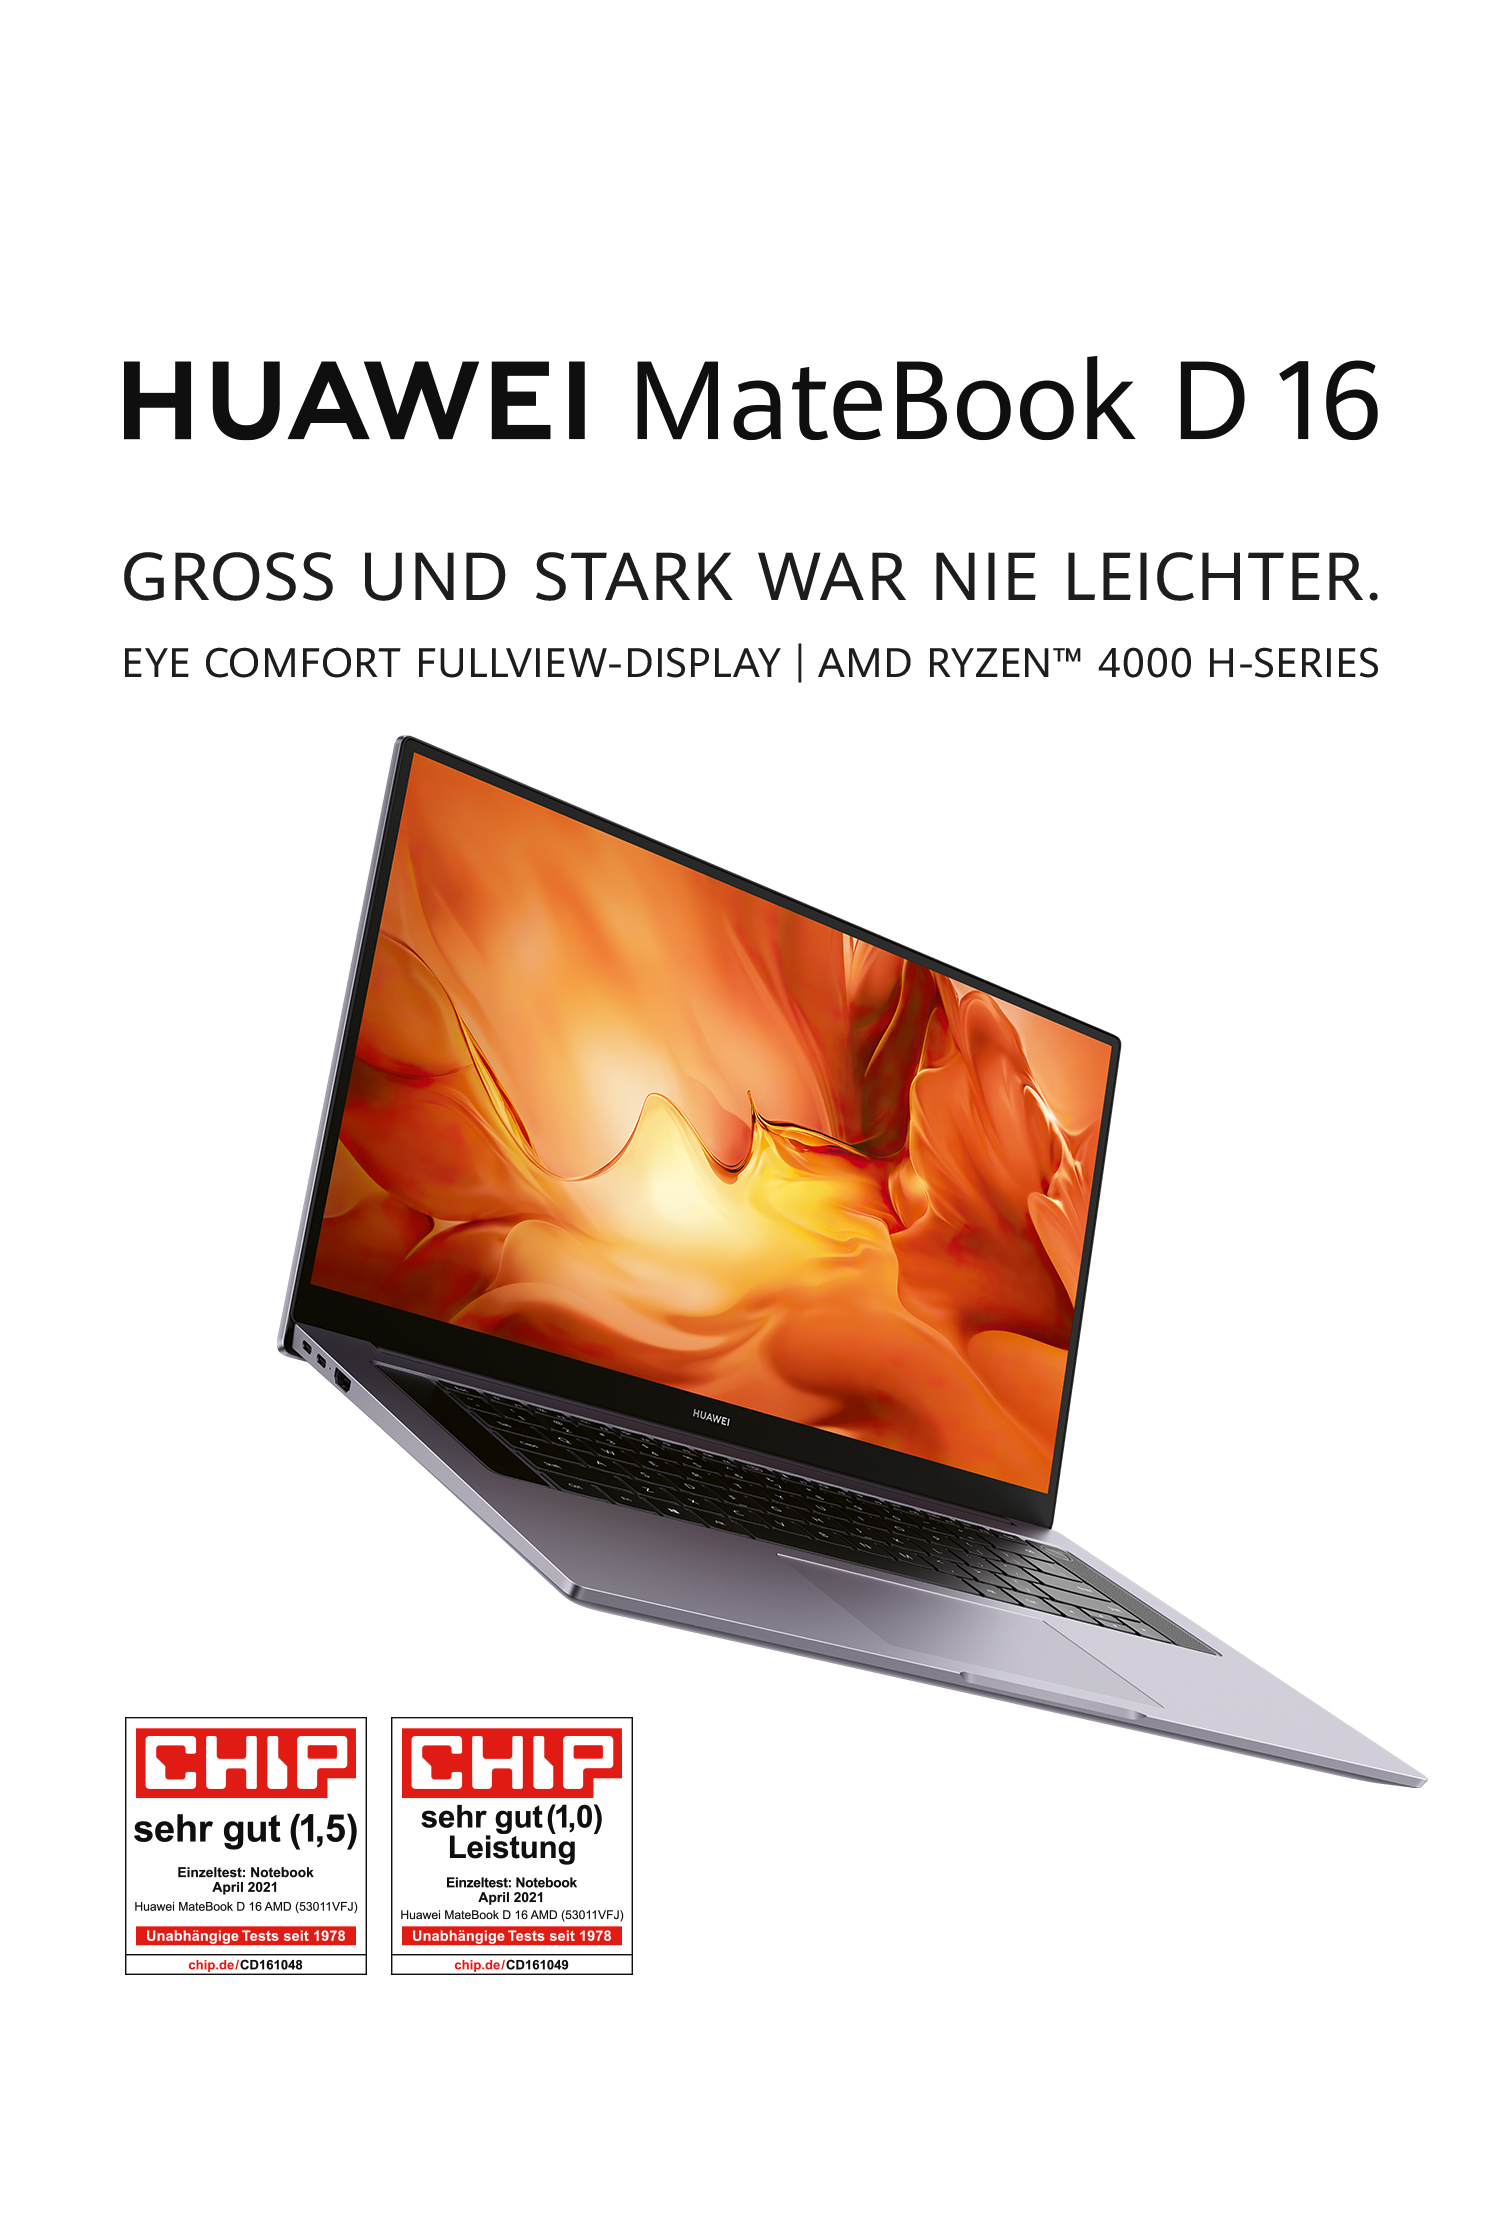 HUAWEI MateBook D 16 AMD 2021 light body